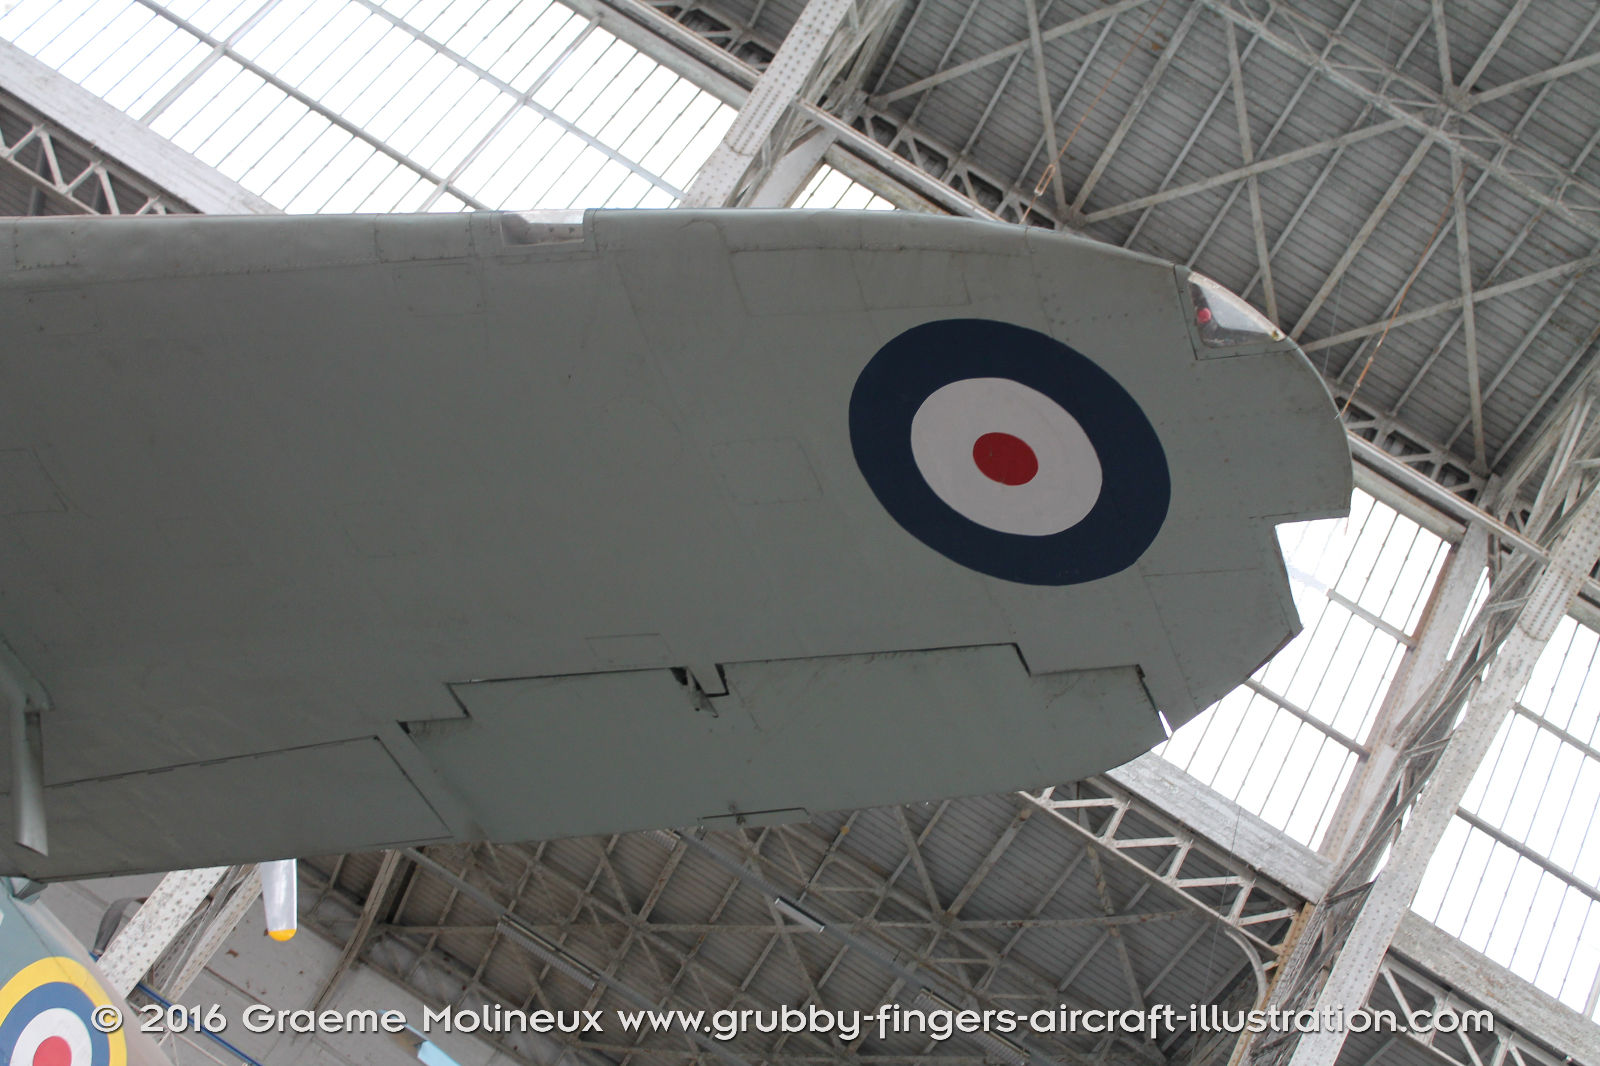 Bristol_Blenheim_MkIV_Walkaround_10083_RAF_Belgium_Museum_2015_27_GraemeMolineux